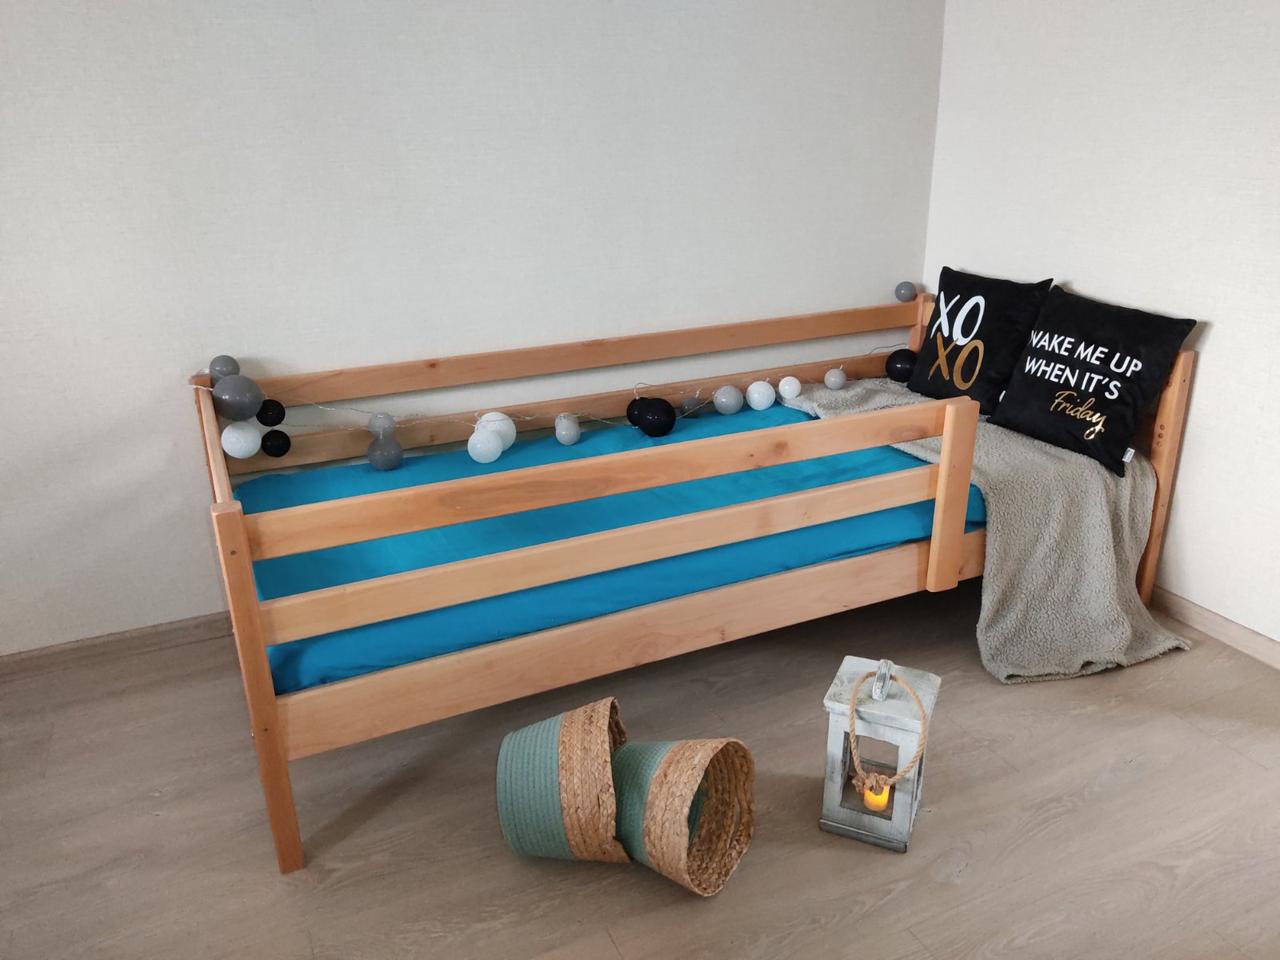 Дерев'яне ліжко дитяче ЕКО 80*160 колір вільха